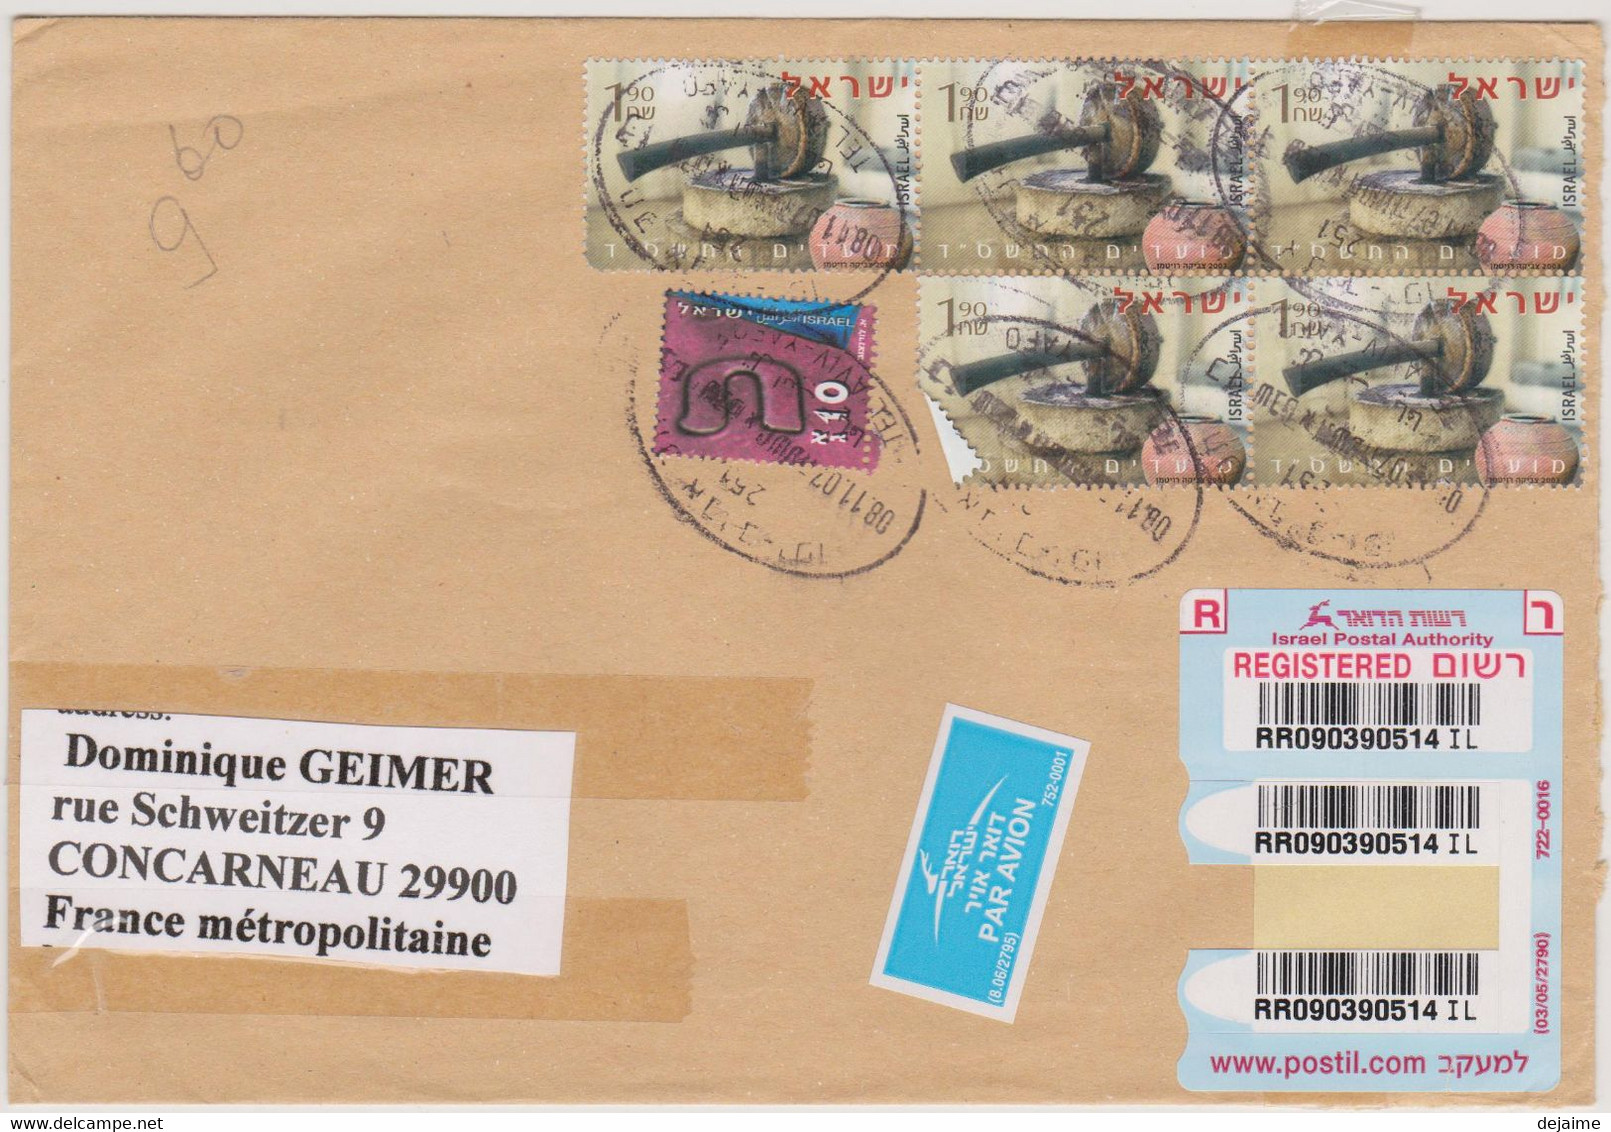 ISRAEL 2007 Enveloppe Recommandée Vers La France Affranchissement N°YT 1678 Huile D'Olive X5  Cachet 8 11 2007 - Covers & Documents